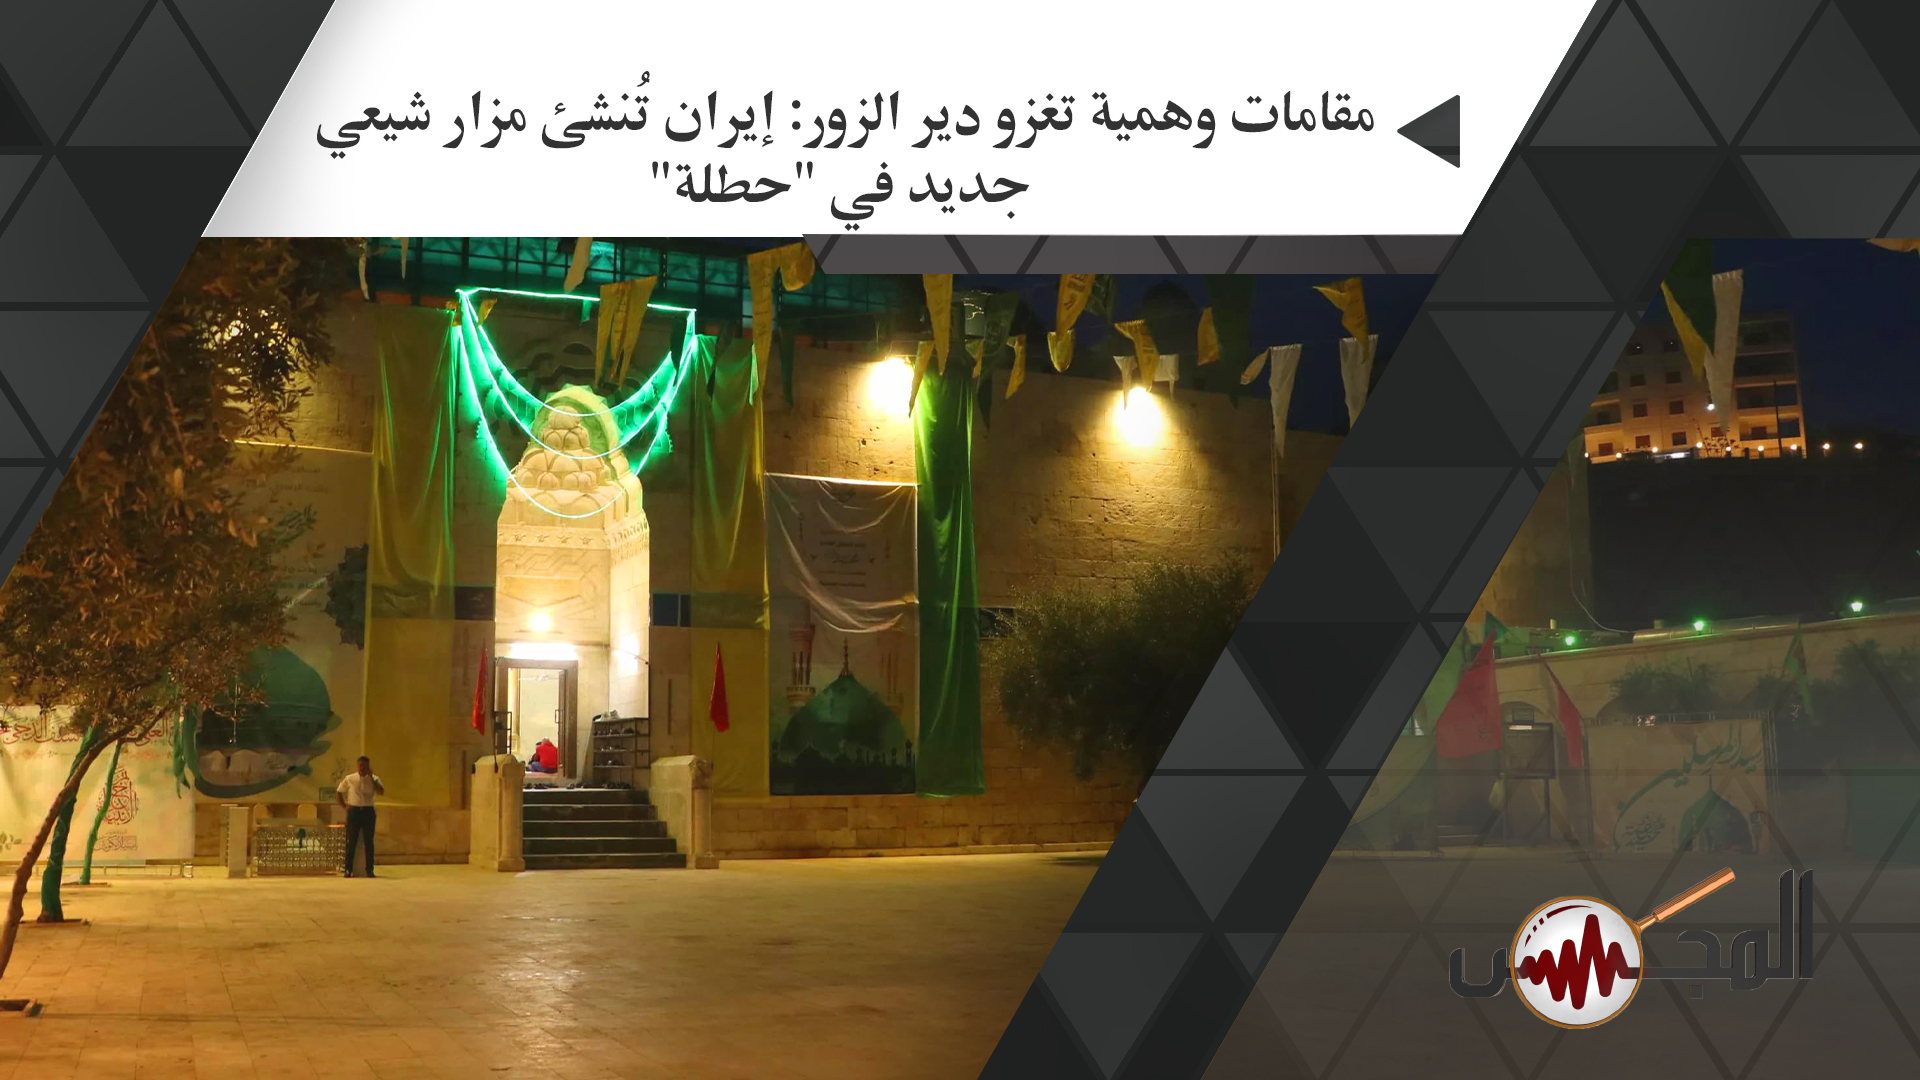 مقامات وهمية تغزو دير الزور: إيران تُنشئ مزار شيعي جديد في 